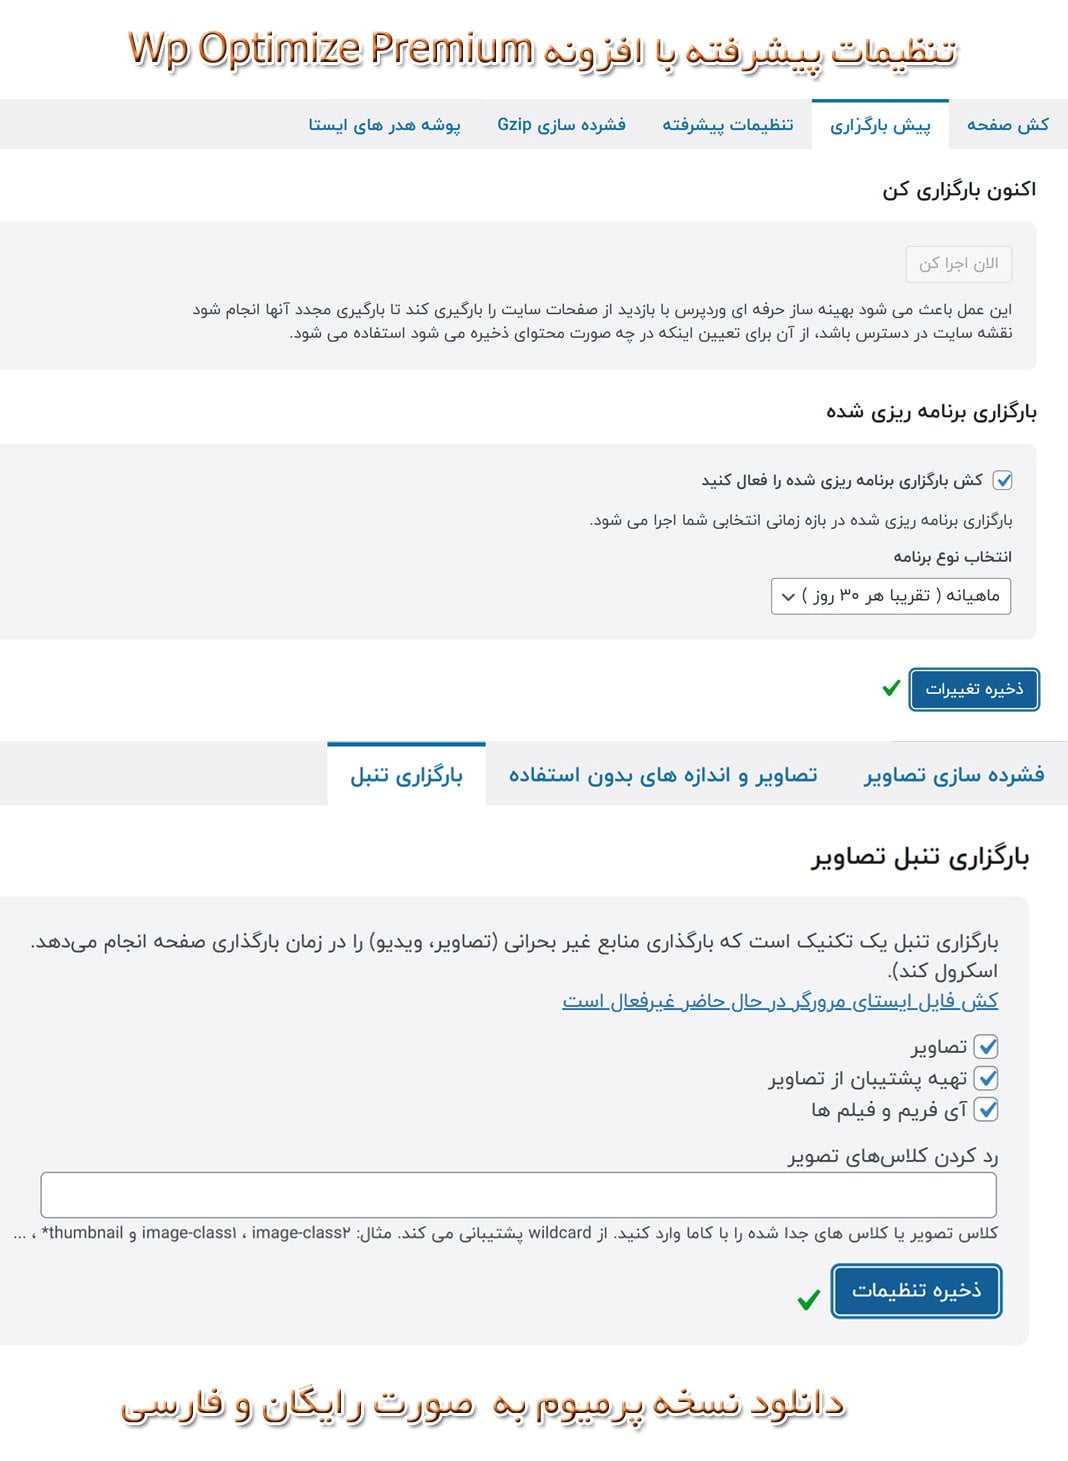 دانلود رایگان افزونه Wp Optimize Premium فارسی آپتیمایز لایسنس اورجینال 